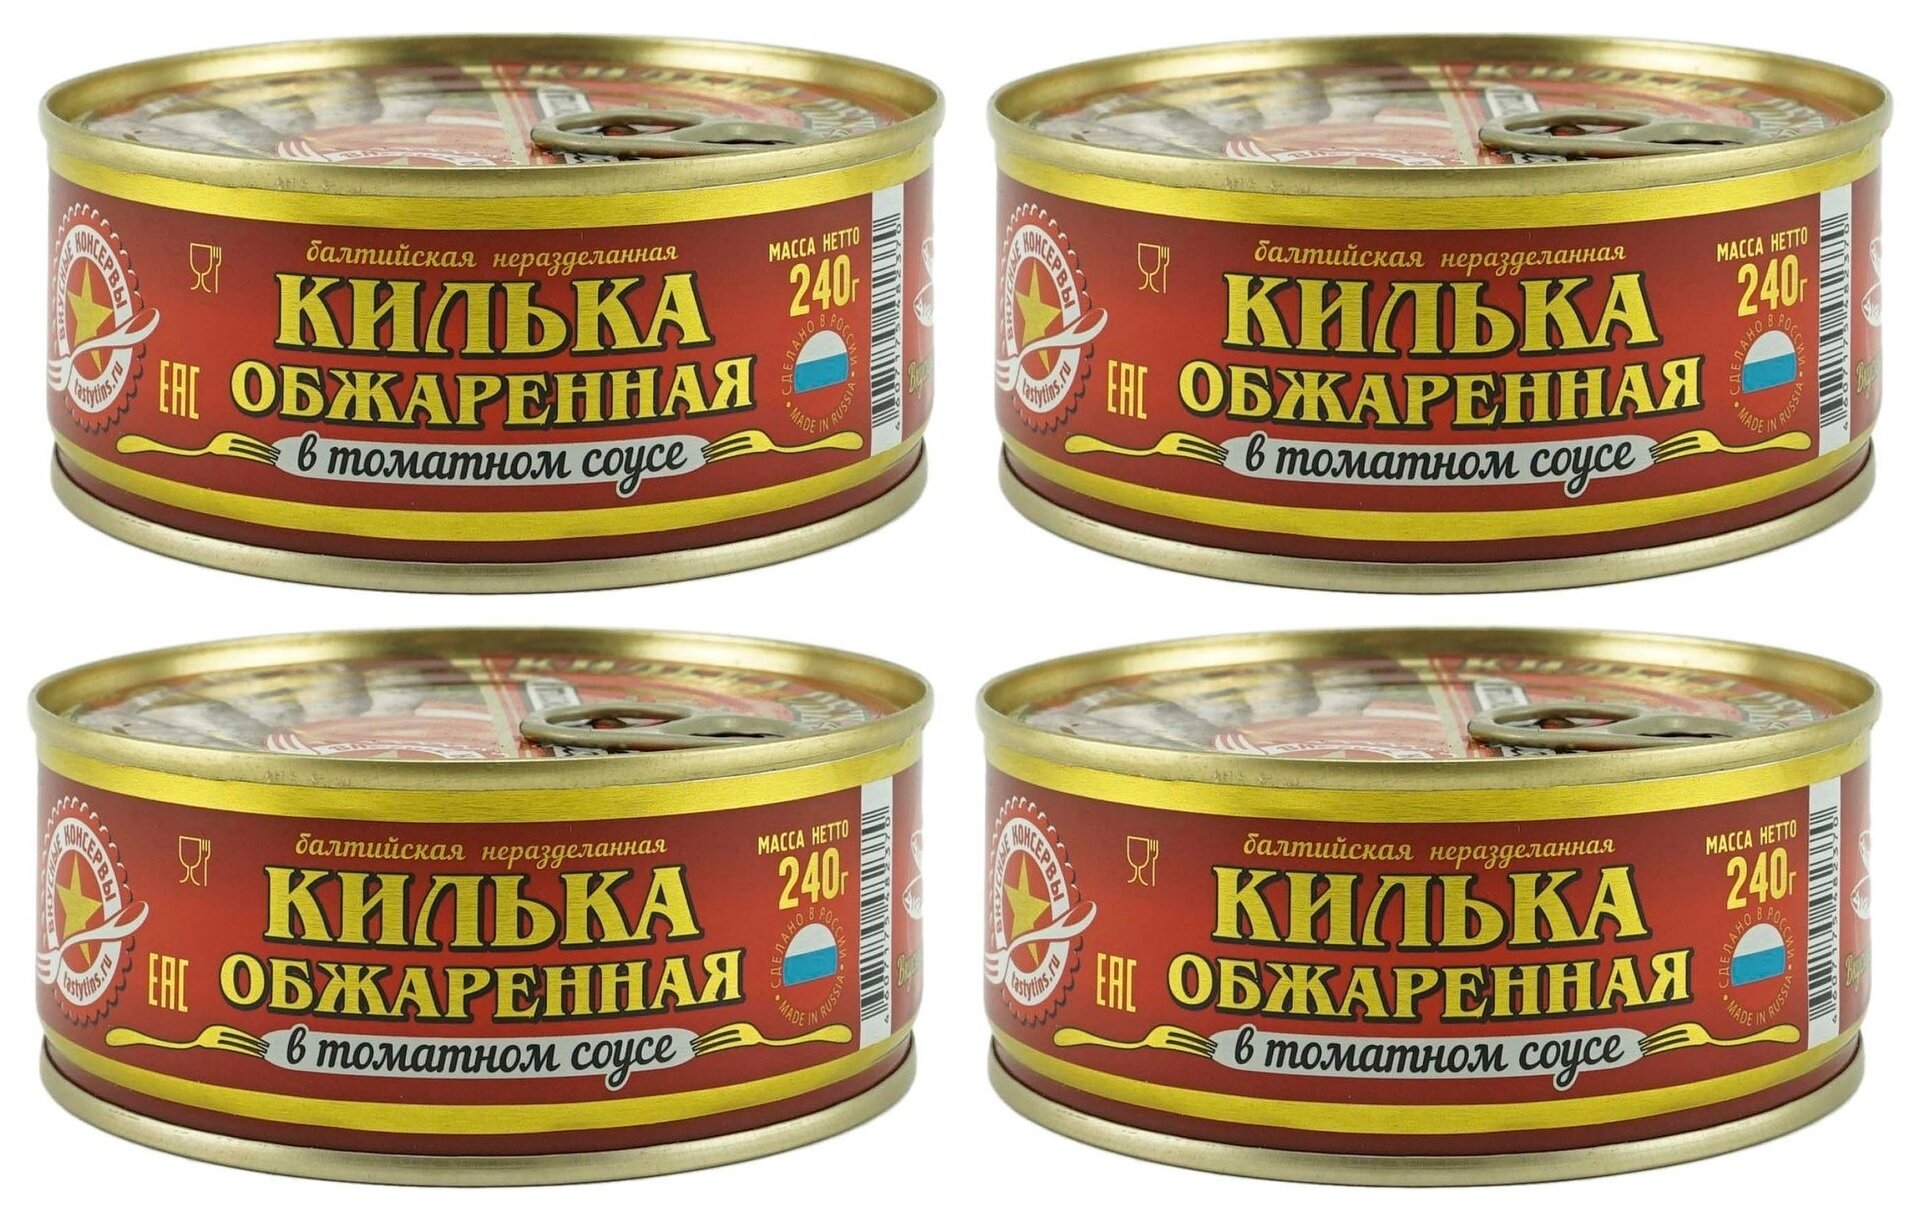 Консервы рыбные "Вкусные консервы" - Килька обжаренная в томатном соусе, 240 г - 4 шт